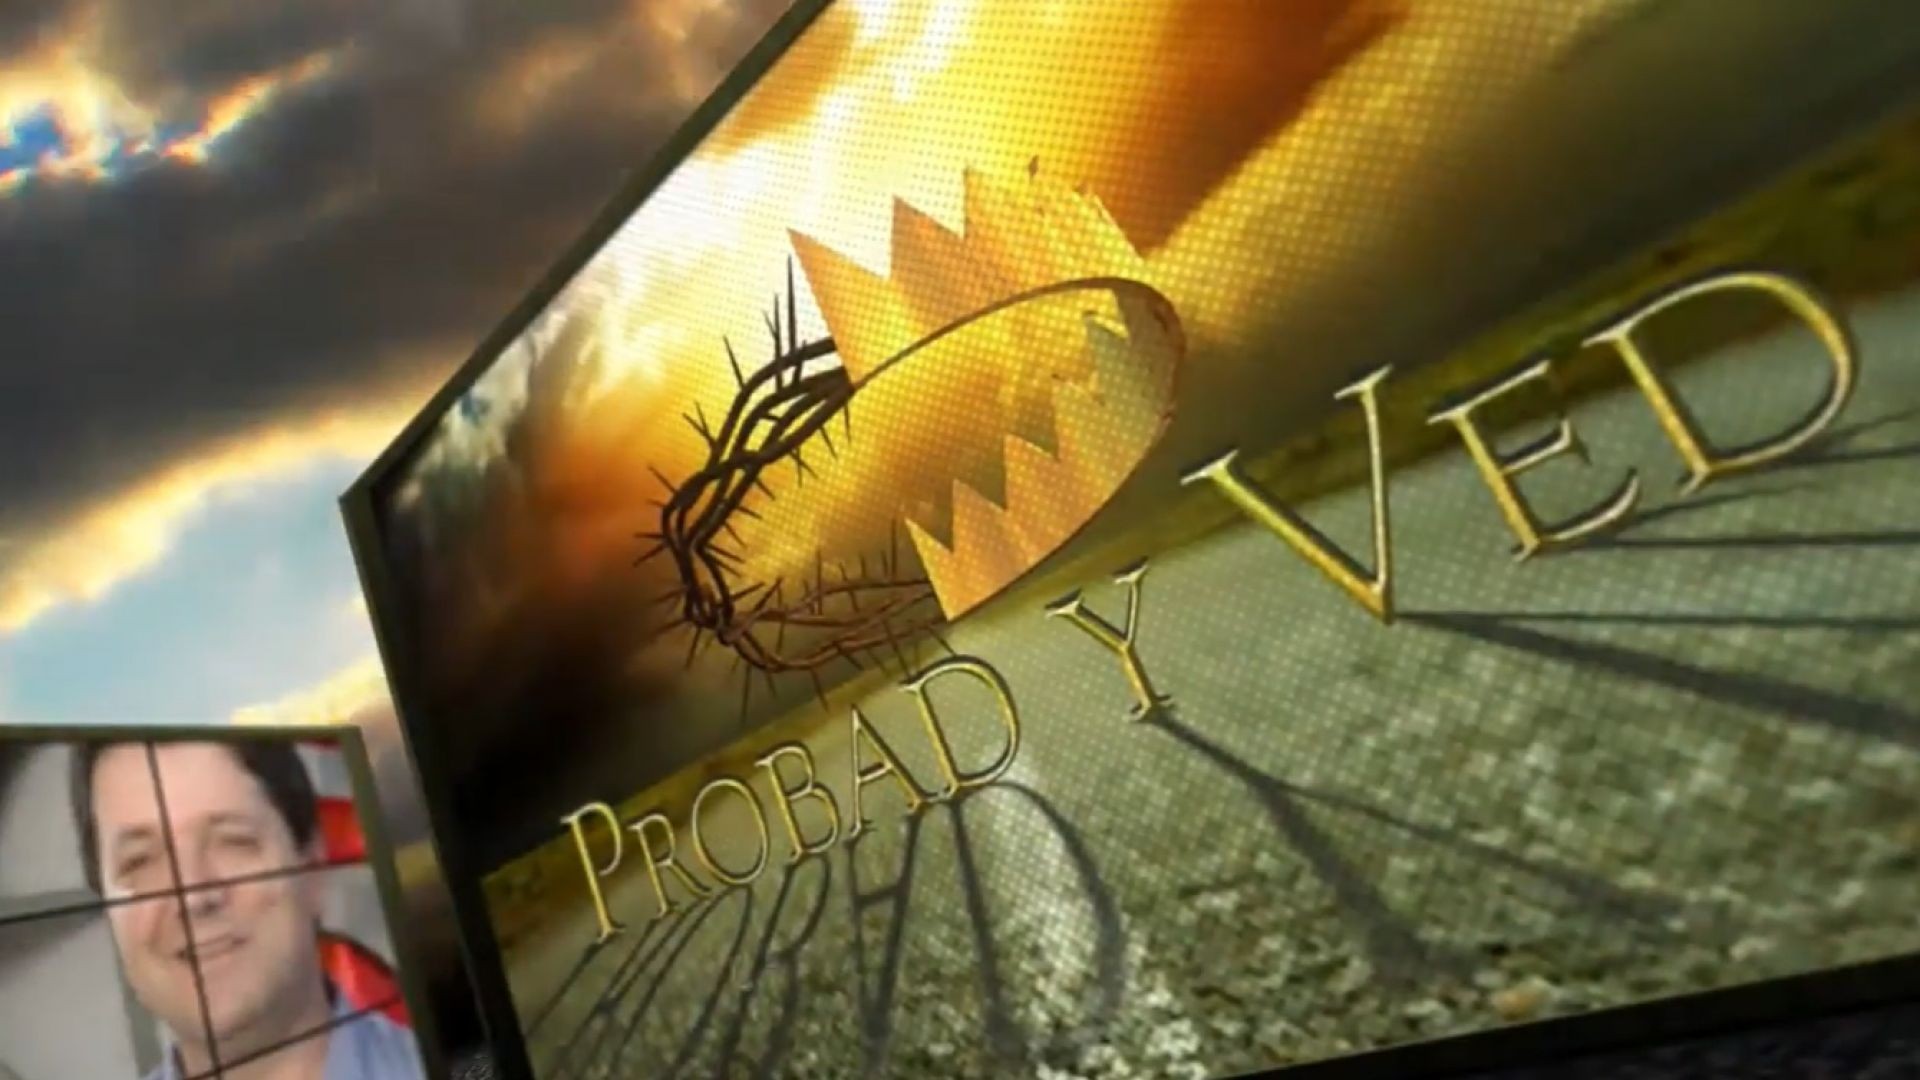 ⁣Probad y Ved 2012 - Comunion con Dios